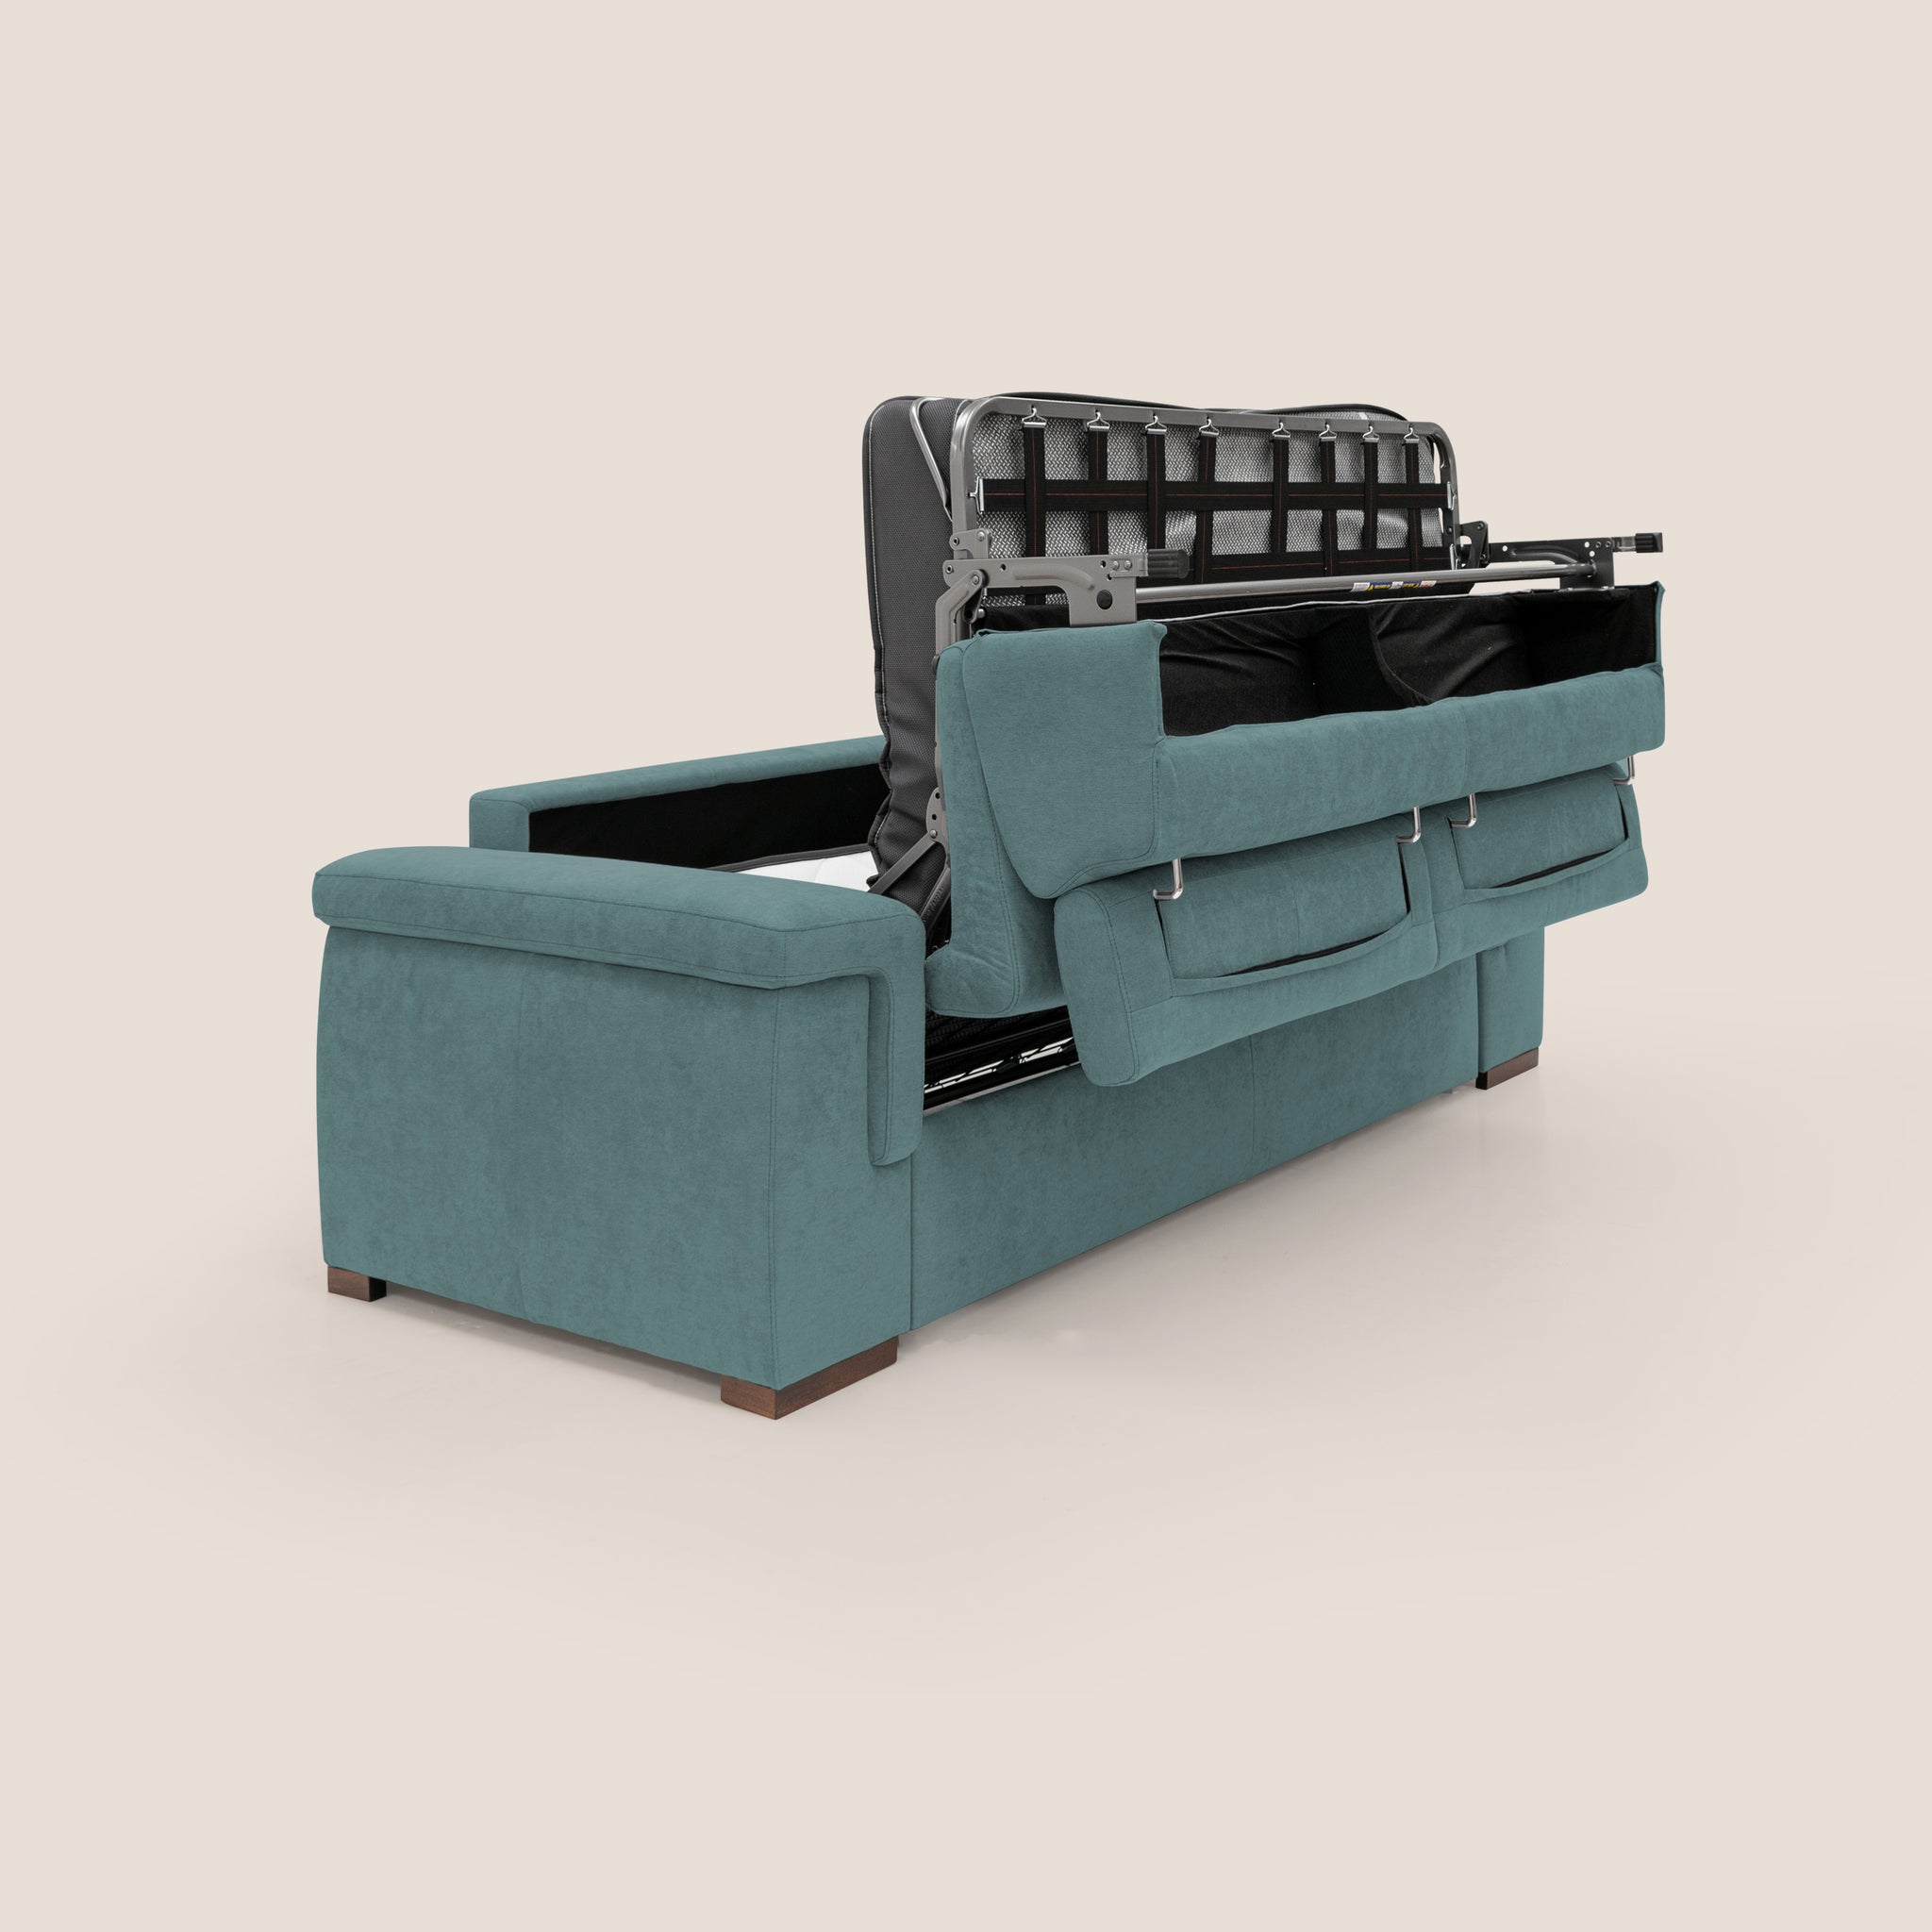 Canapé-lit matelas 140x190 cm, avec sangles de fixation, amovible et  lavable, 60 cm d'assise, Made in Italy